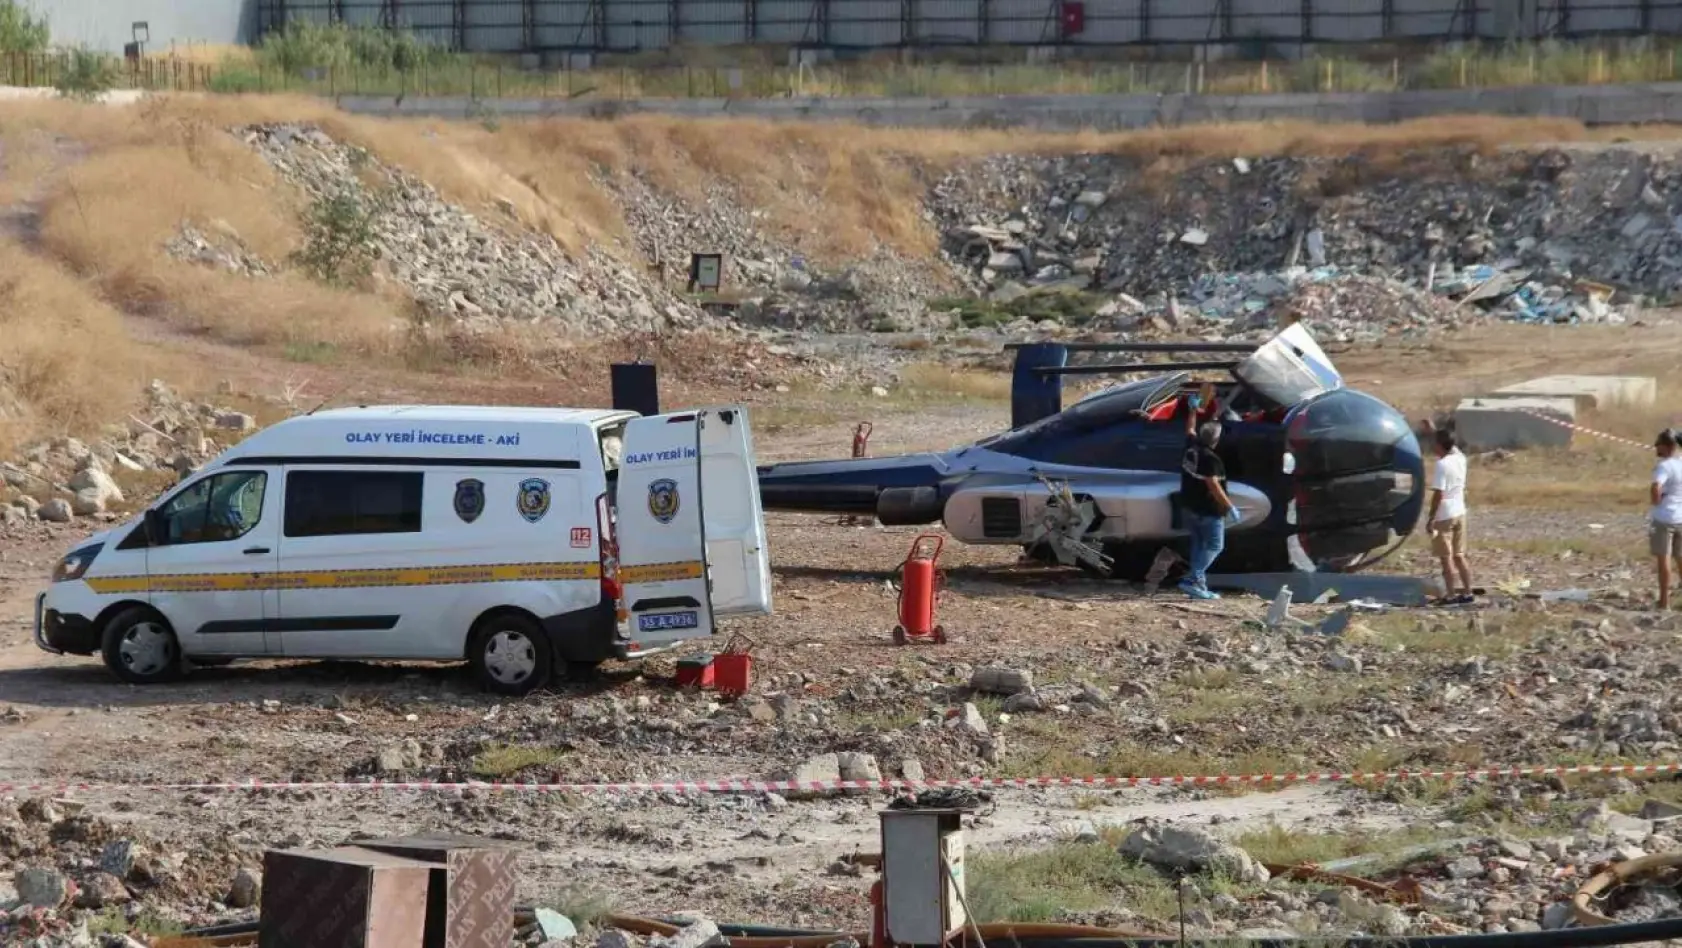 Helikopter kazasının yaşandığı yerde çalışmalar sürüyor